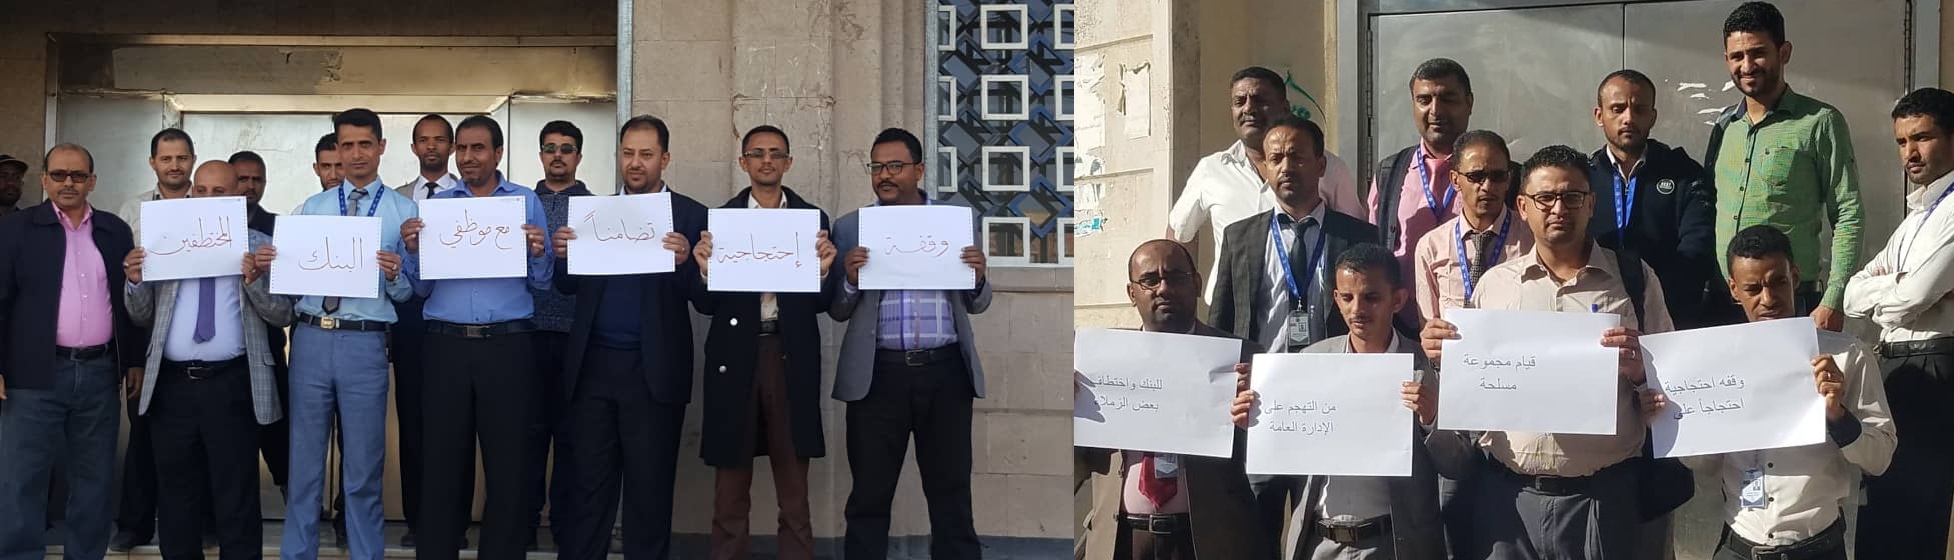 بنك التضامن يغلق أبوابه بعد اختطاف الحوثيين لعدد من موظفيه ..!!